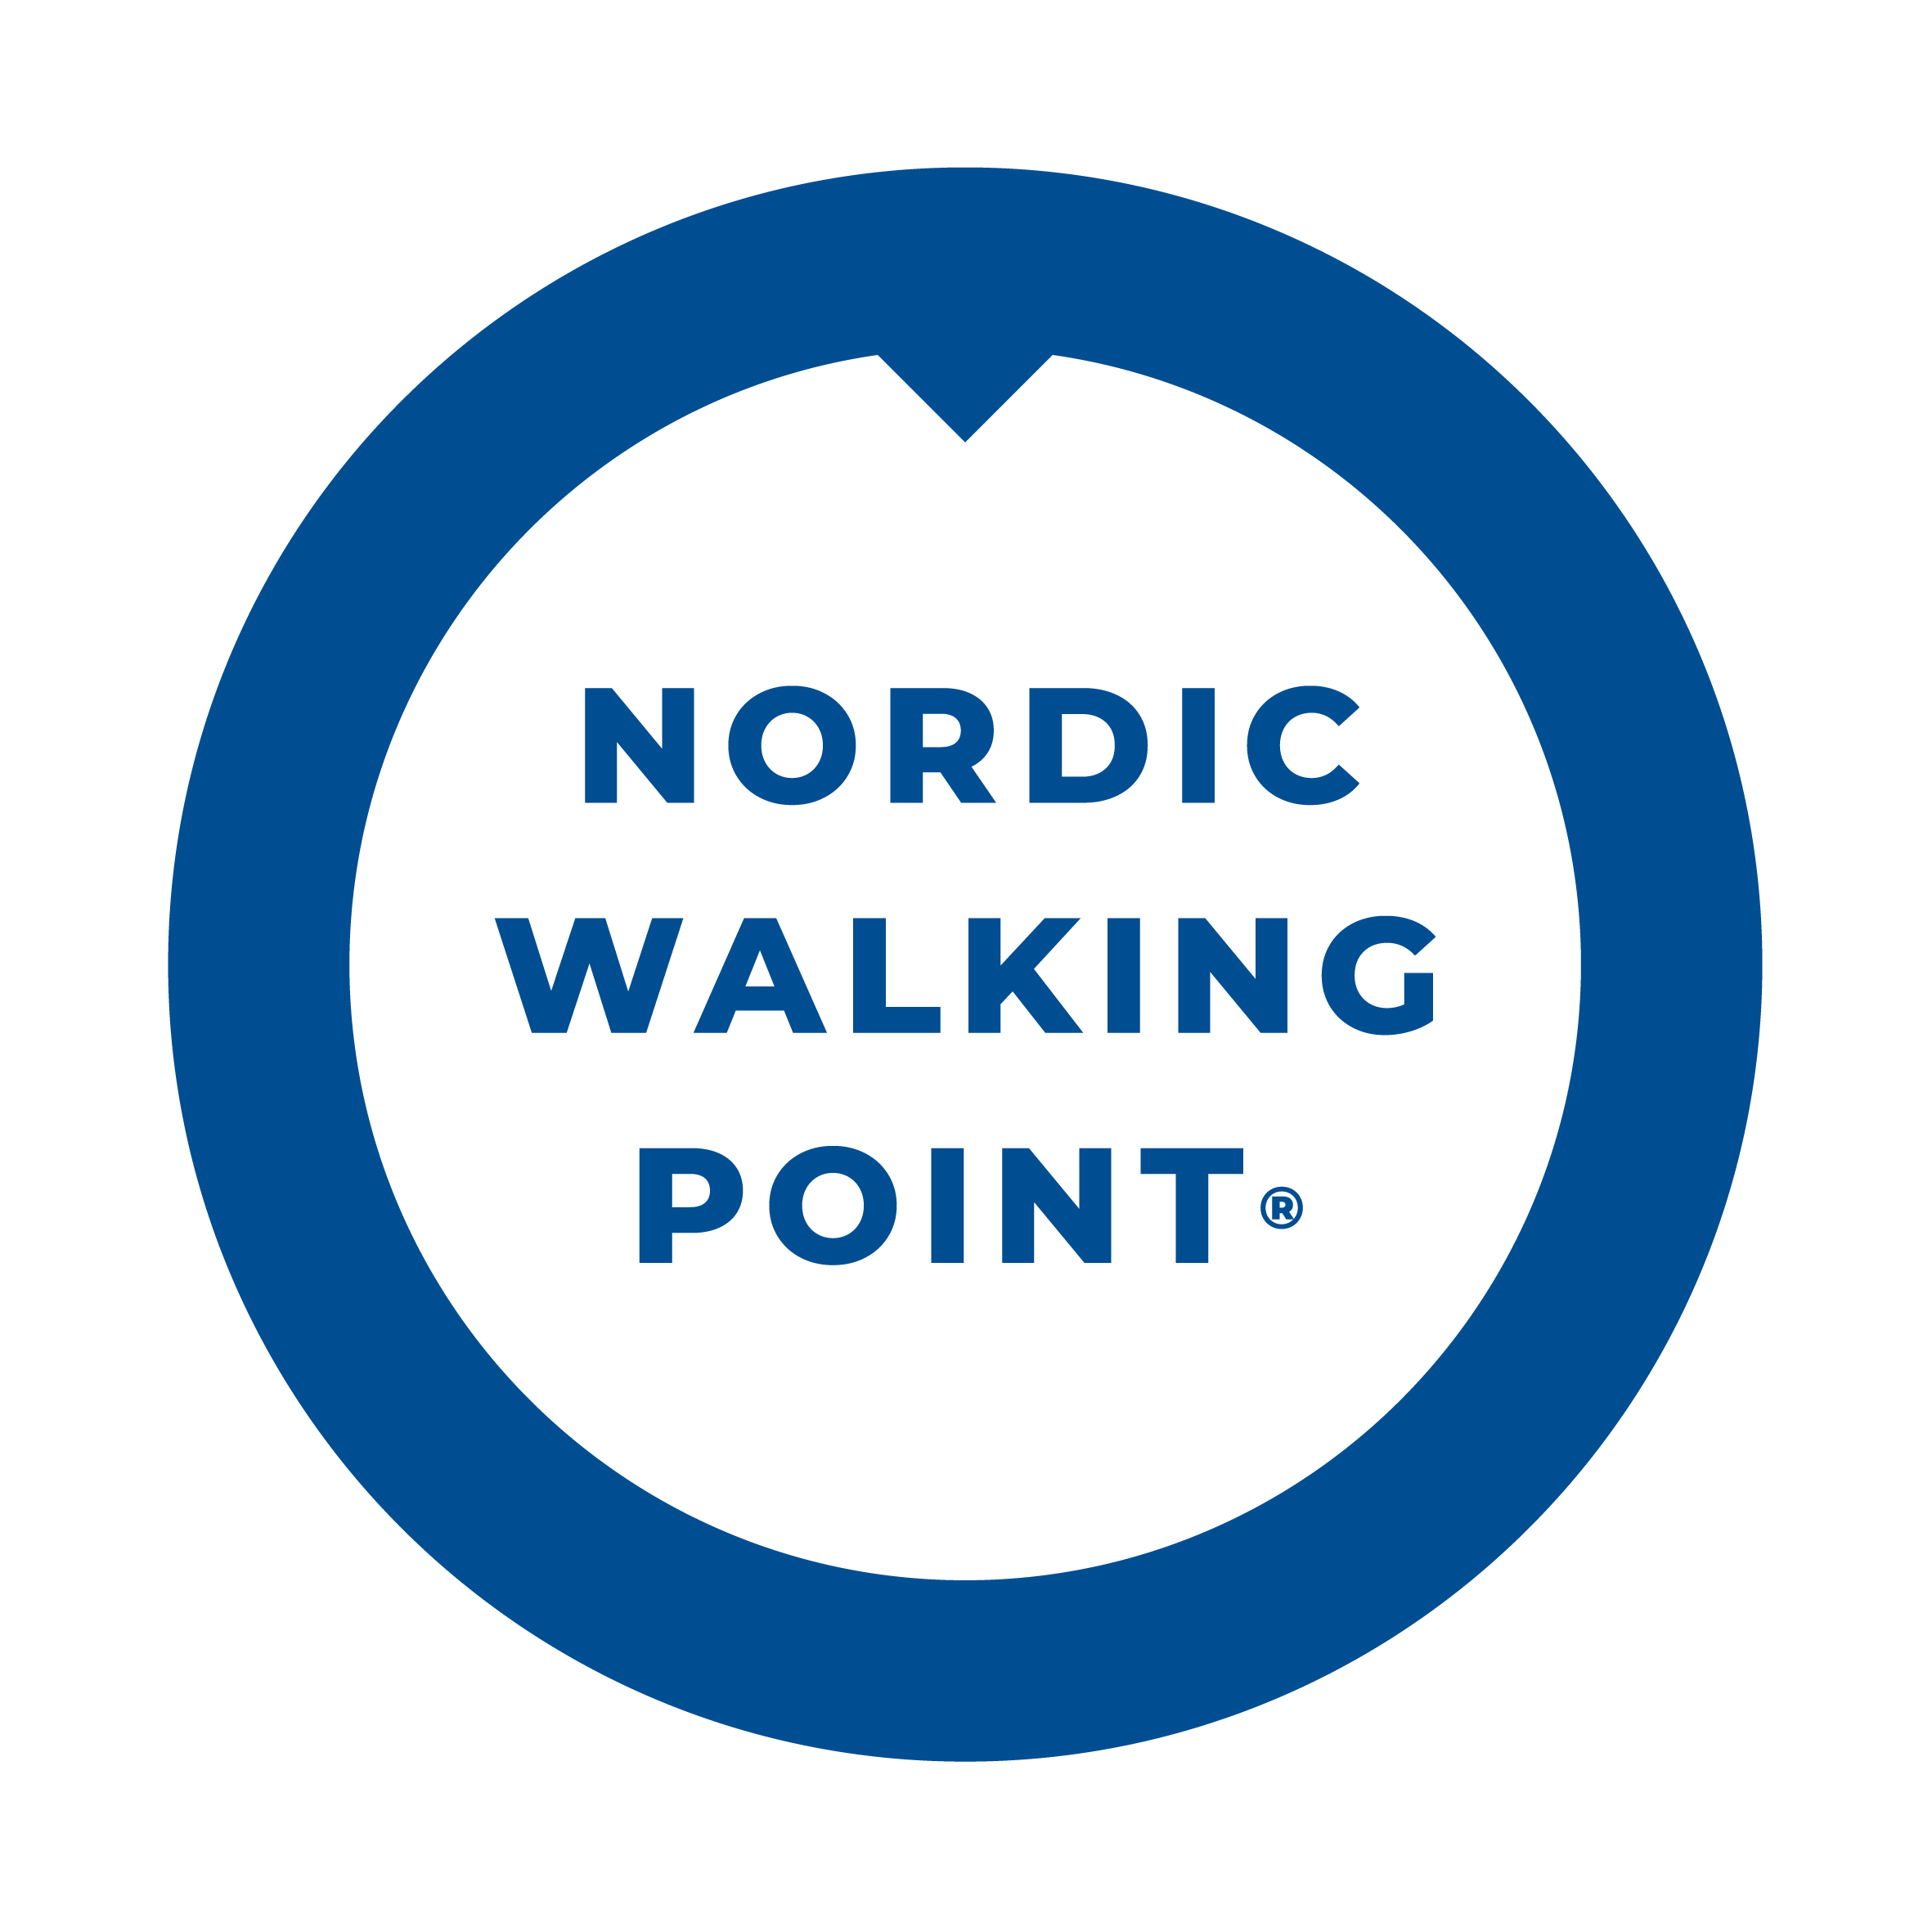 Nordic Walking Point je značka kvality služeb Nordic Walking. Jedná se o projekt, který si klade za cíl vytvářet, zviditelňovat a podporovat místa, kde se klientům dostane prvotřídních služeb pro provozování Nordic Walking. Certifikace Nordic Walking Point symbolizuje kvalitu a prestiž z hlediska zázemí potřebného vybavení (kvalitních a správných holí), služeb poskytovaných vyškoleným personálem a vhodného terénu. Nordic Walking Point je autorský projekt Miroslava Miry v oblasti Nordic walking, který vznikl v České republice za chůze v roce 2009. Cílem certifikace Nordic Walking Point je pomoci Vám najít kvalitní služby spojené s Nordic Walking a zviditelnit lidi a místa, které je poskytují. Takové místo je označeno certifikovanou známkou Nordic Walking Point v hodnotě bronzové, stříbrné či zlaté. Další informace, konkrétní místa a lidi najdete na www.nordicwalkingpoint.cz.